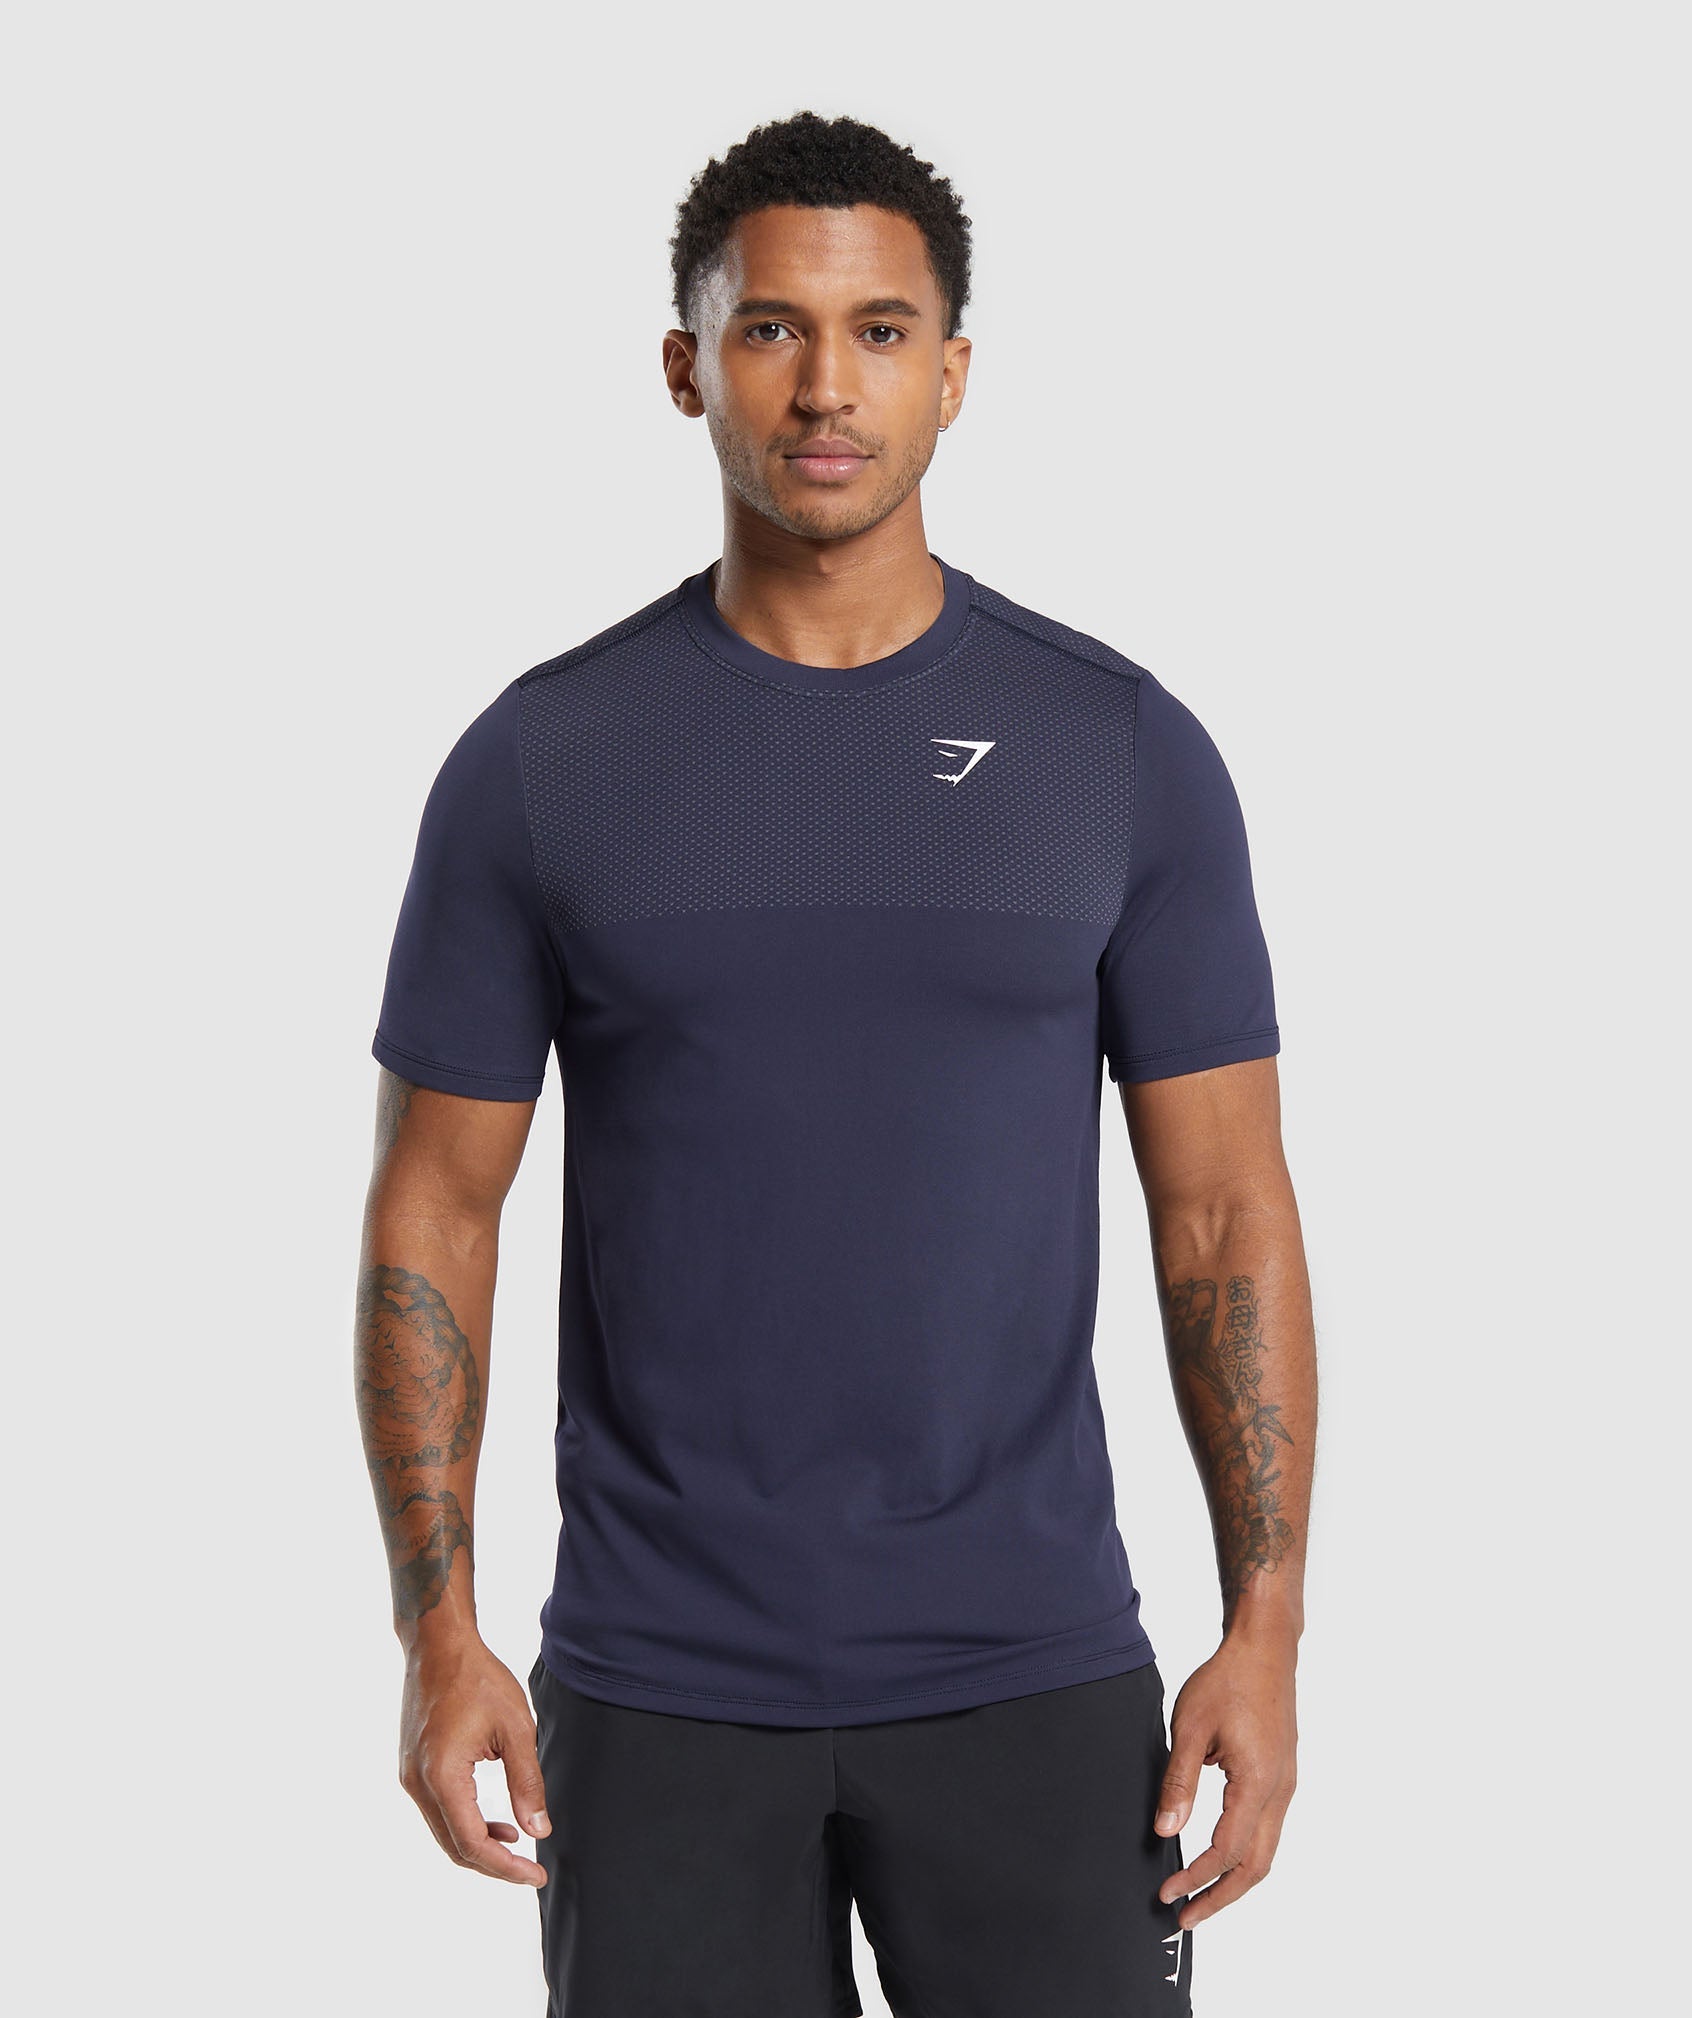 Vital Seamless T-Shirt dans Navy/Light Grey